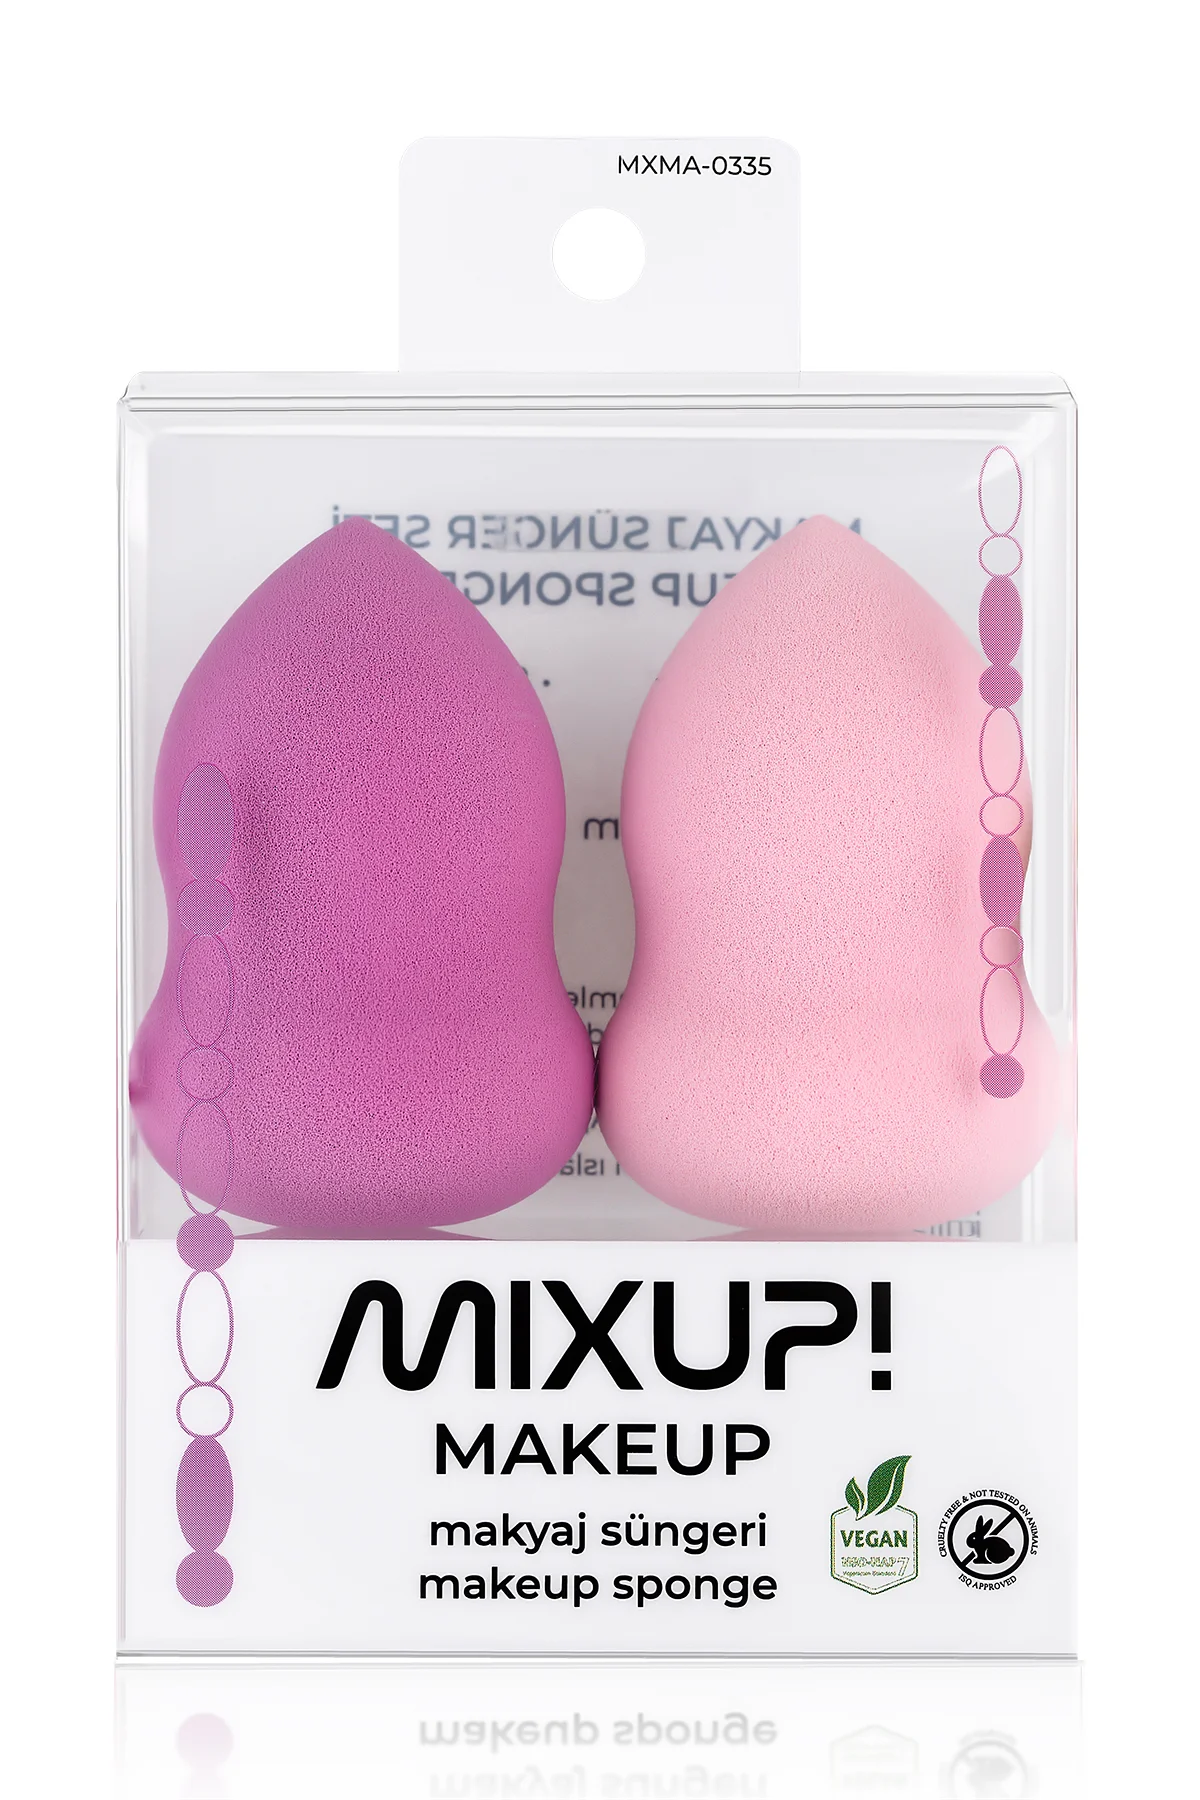 Mixup! Makeup Makyaj Süngeri 2'li - Thumbnail